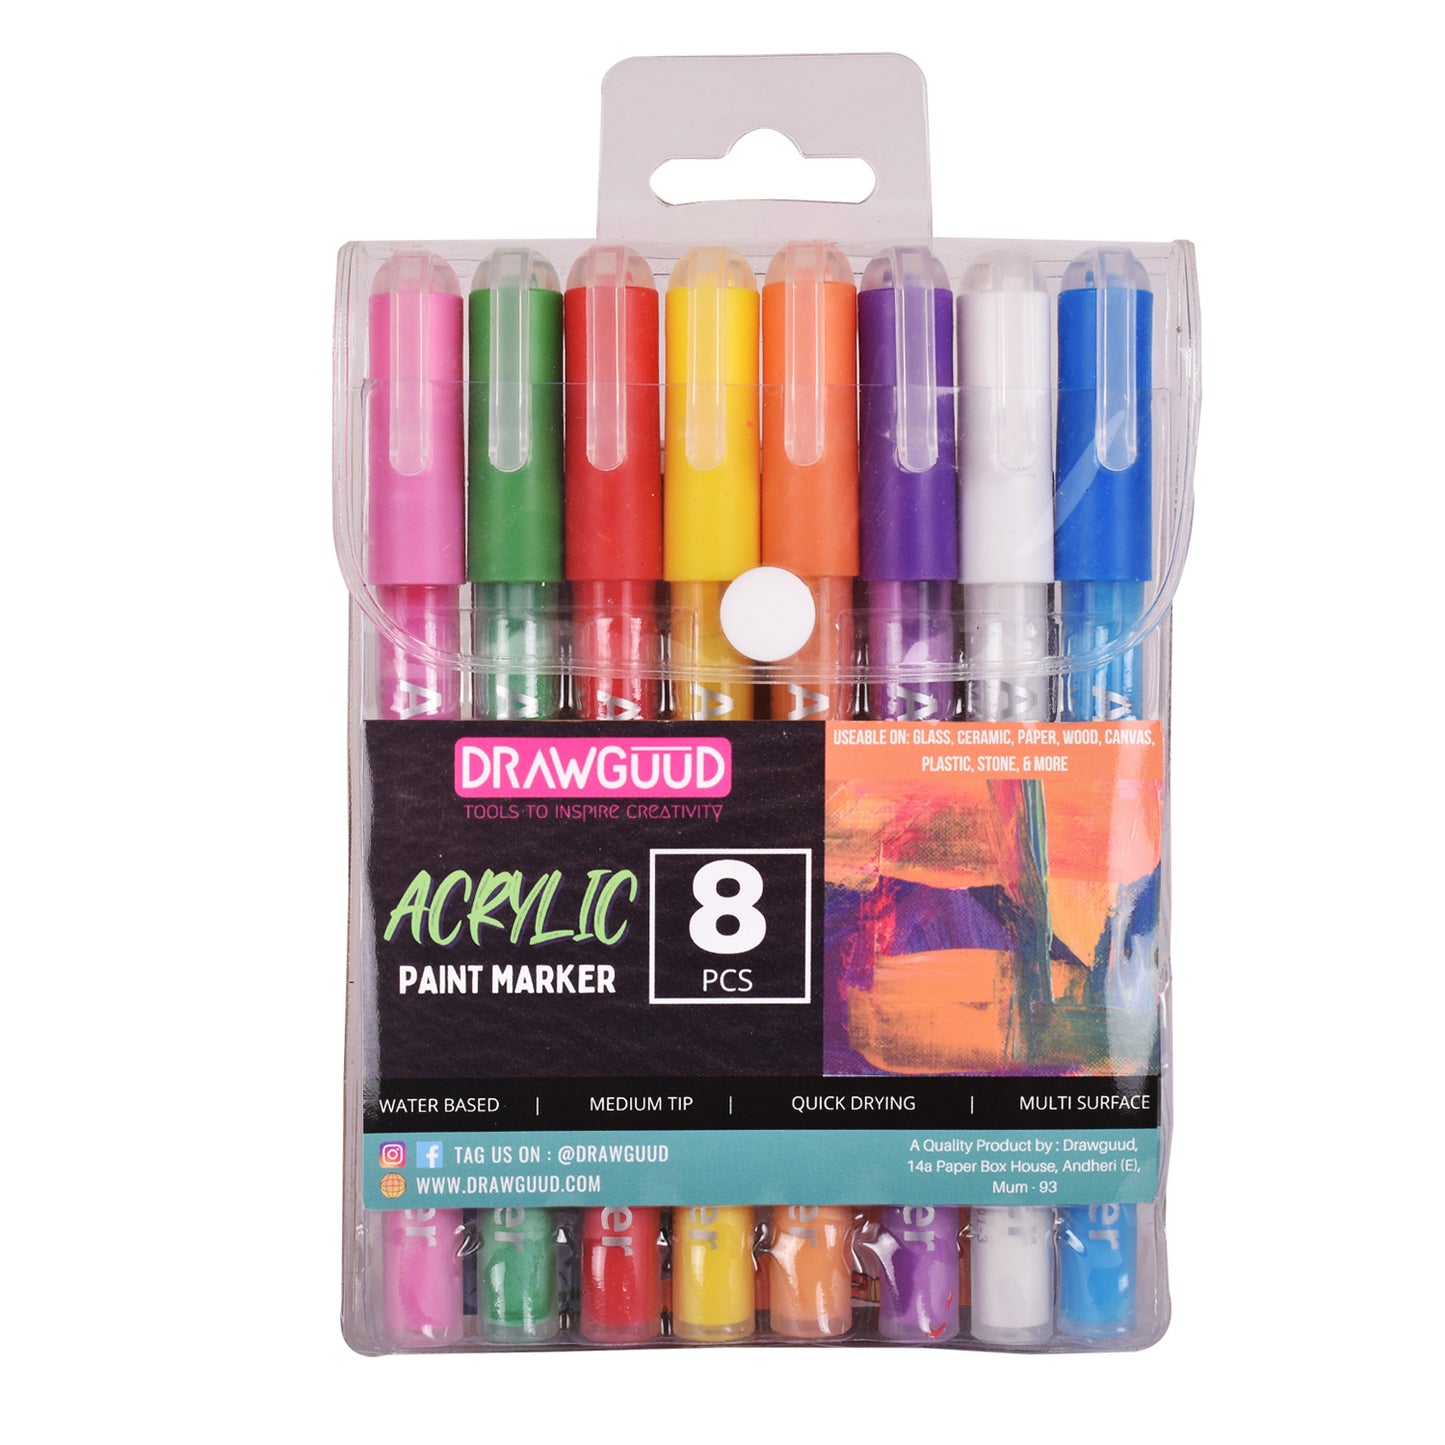 Medium Tip porcelaine paint pen - Set of 12 ceramic paint pens